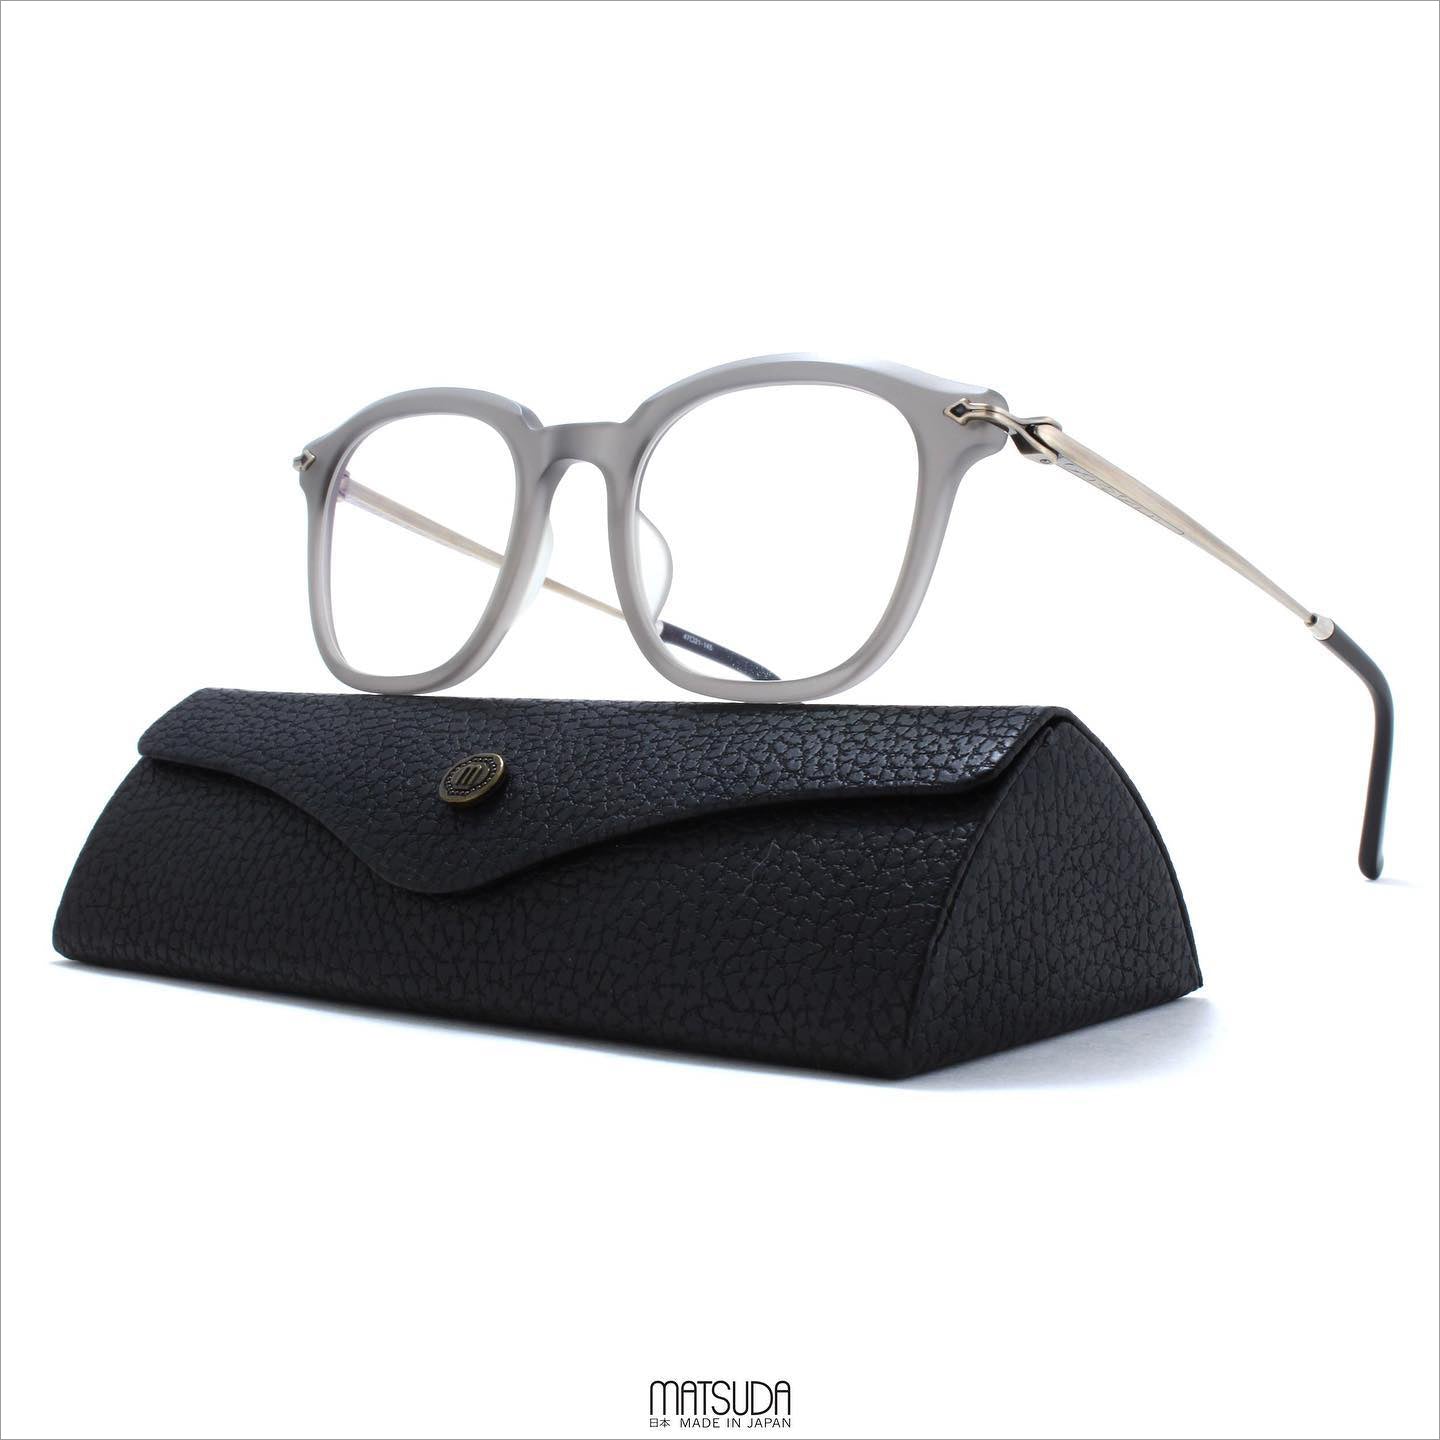 Matsuda Eyewear // M2039 Eyeglasses